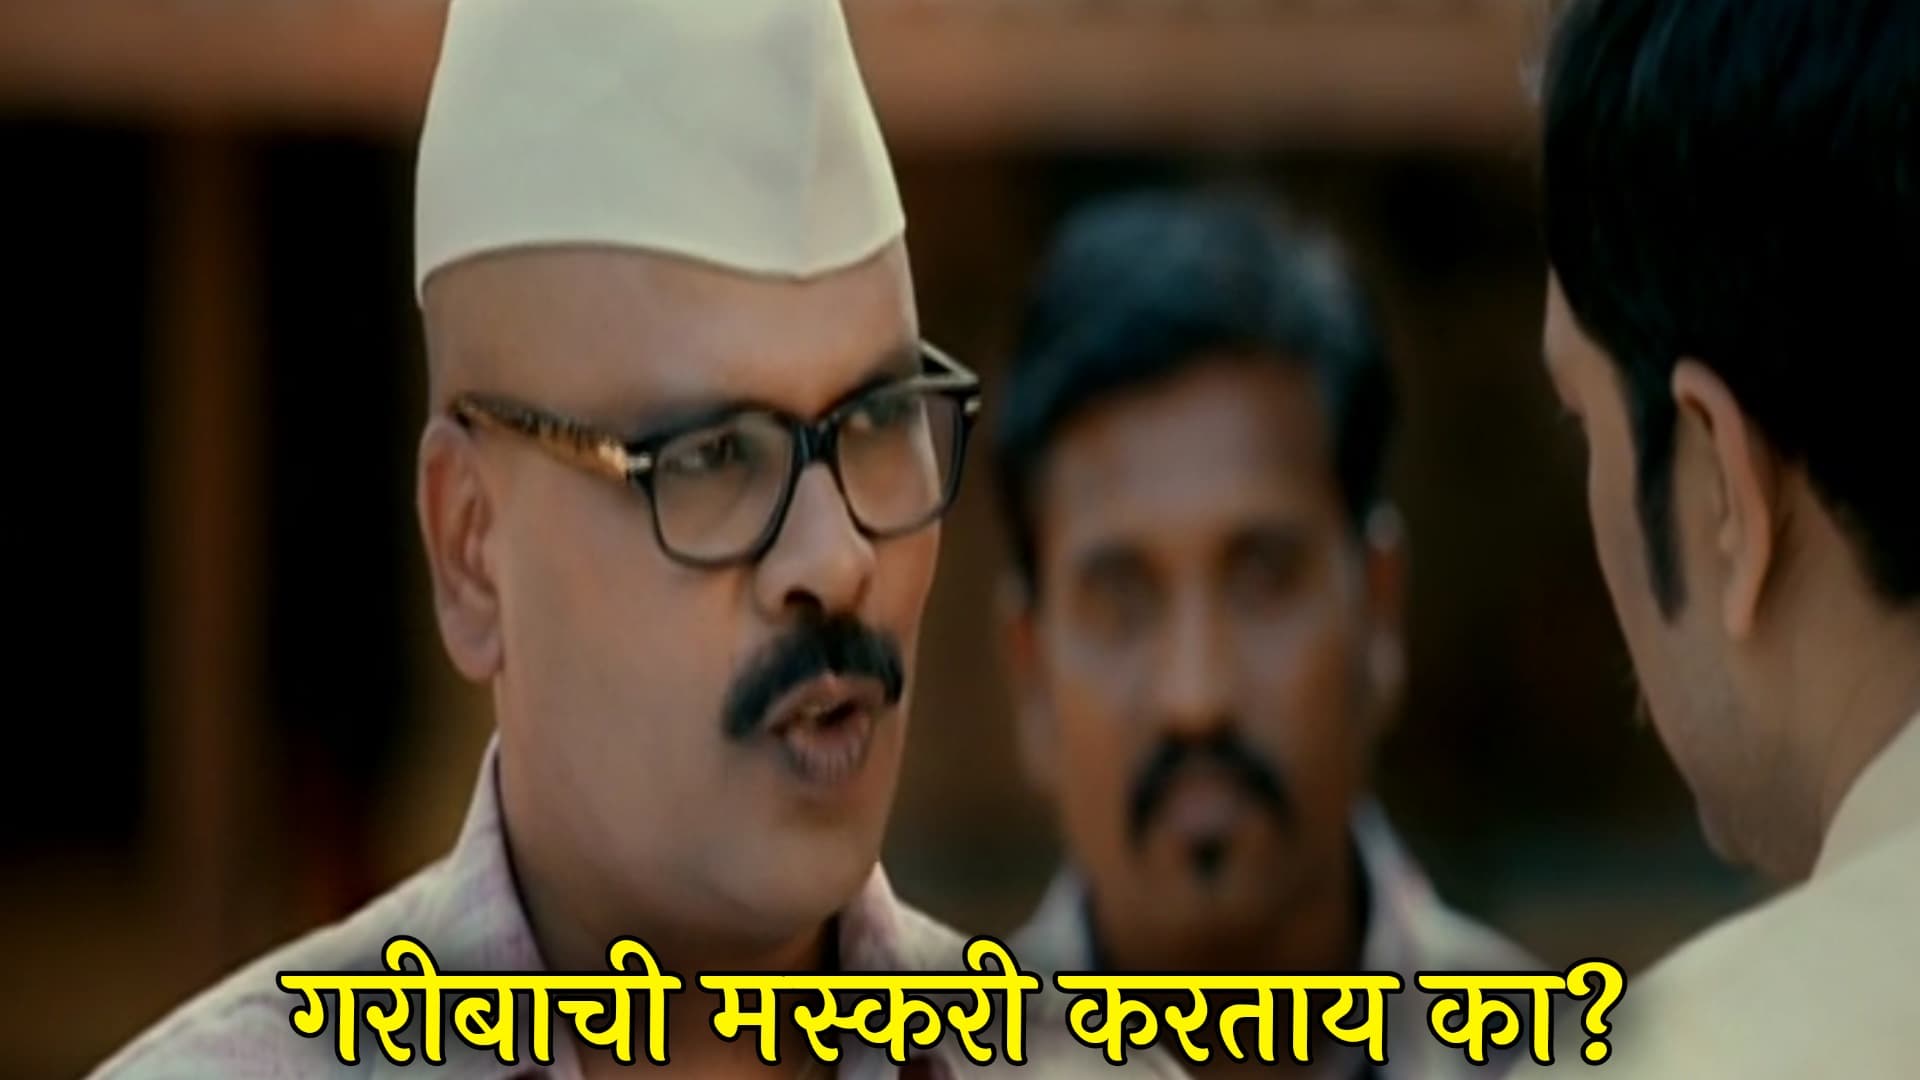 Kamlakar Satpute Fakta Ladh Mhana Marathi Movie Meme Template